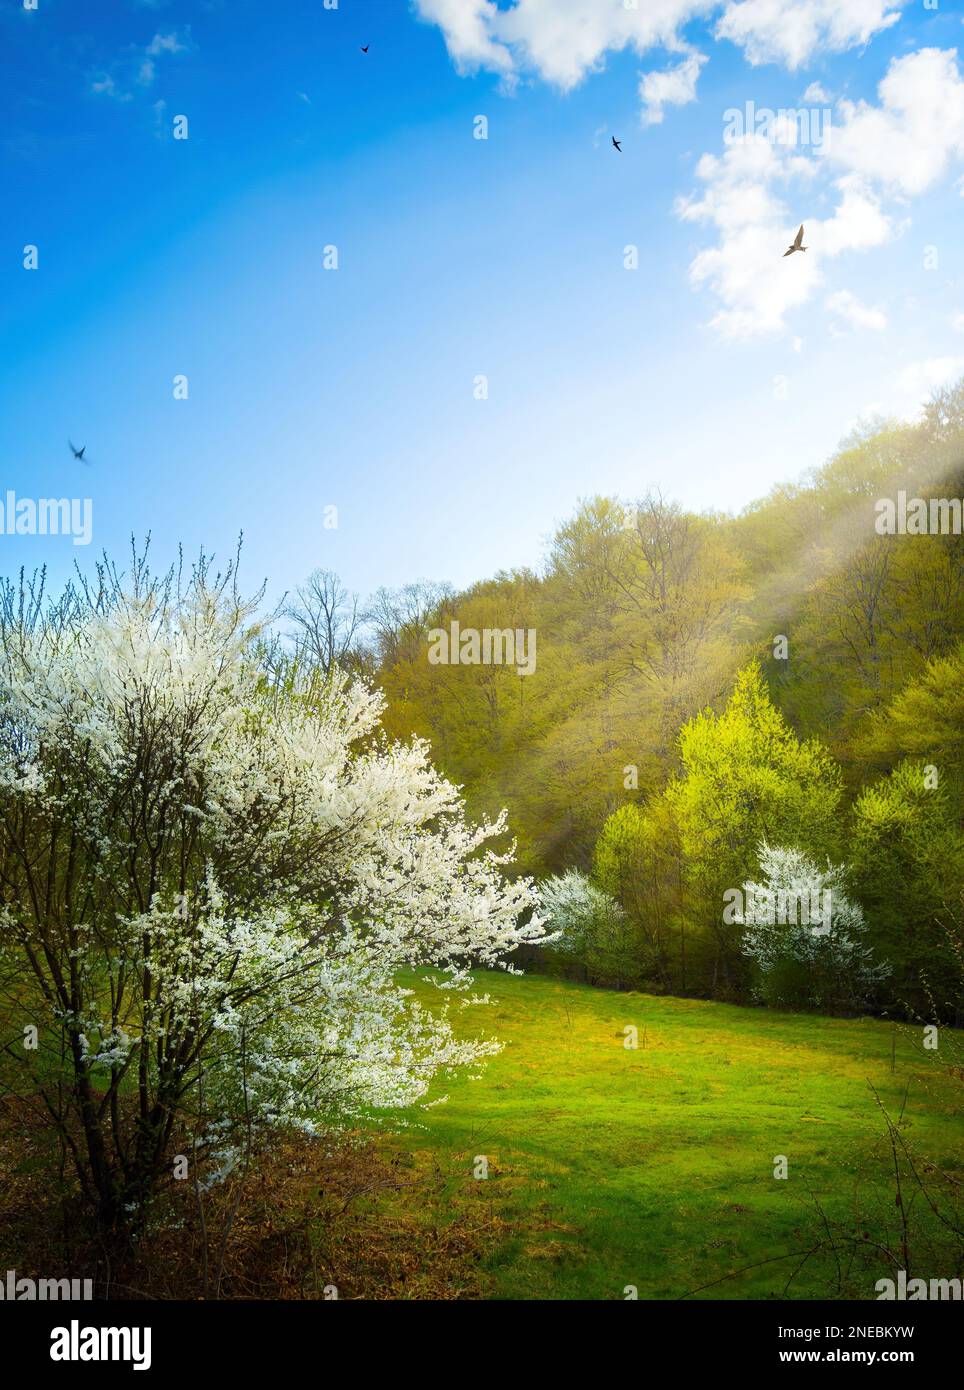 Wunderschöne Frühlingslandschaft. Wunderschöne Natur mit blühenden Obstbäumen und Frühlingswald vor blauem, sonnigen Himmel mit Wolken Stockfoto